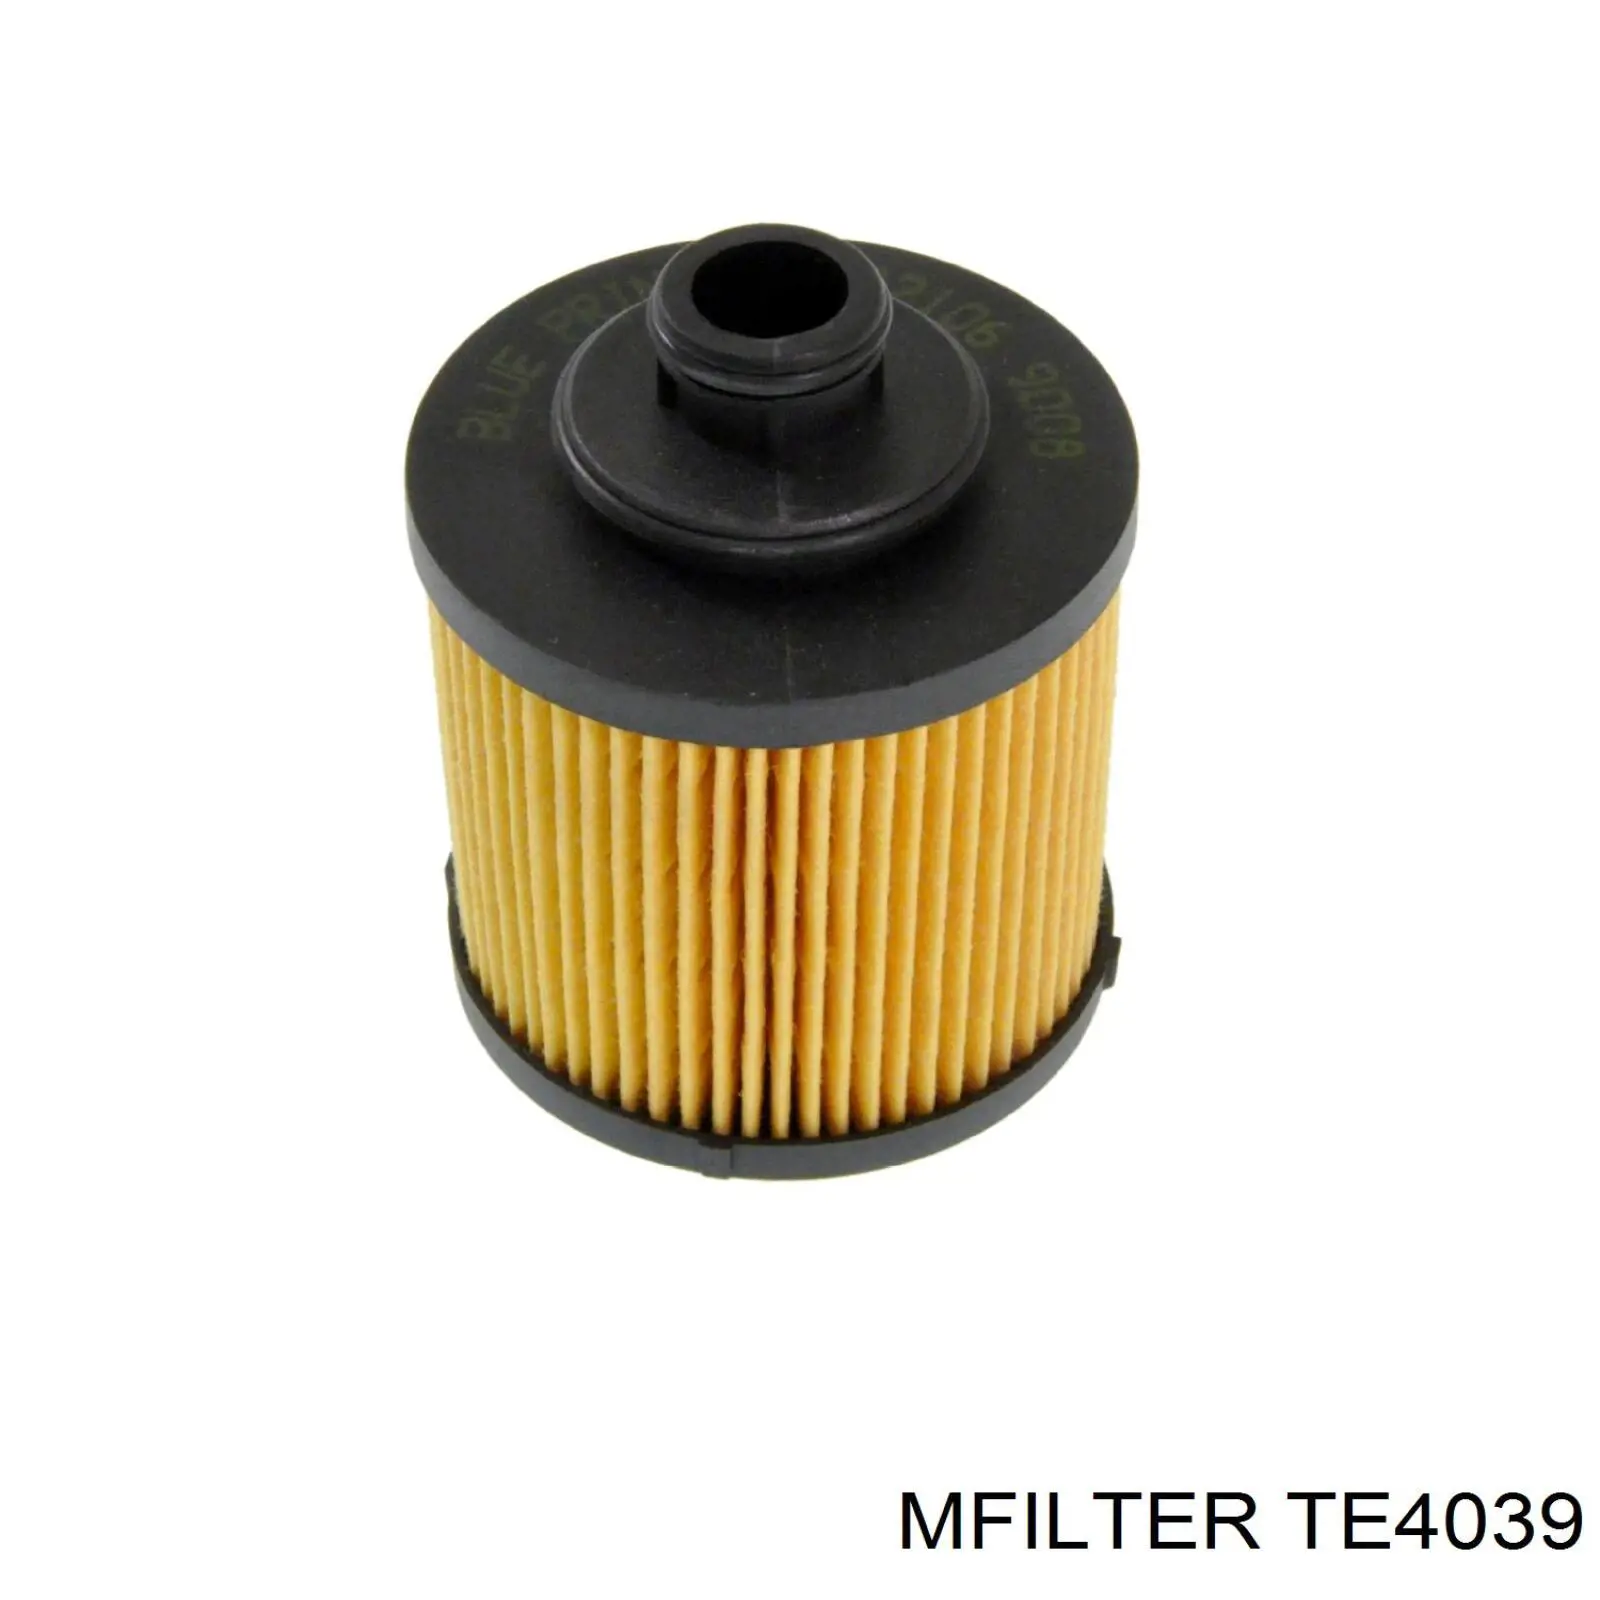 TE 4039 Mfilter filtro de aceite